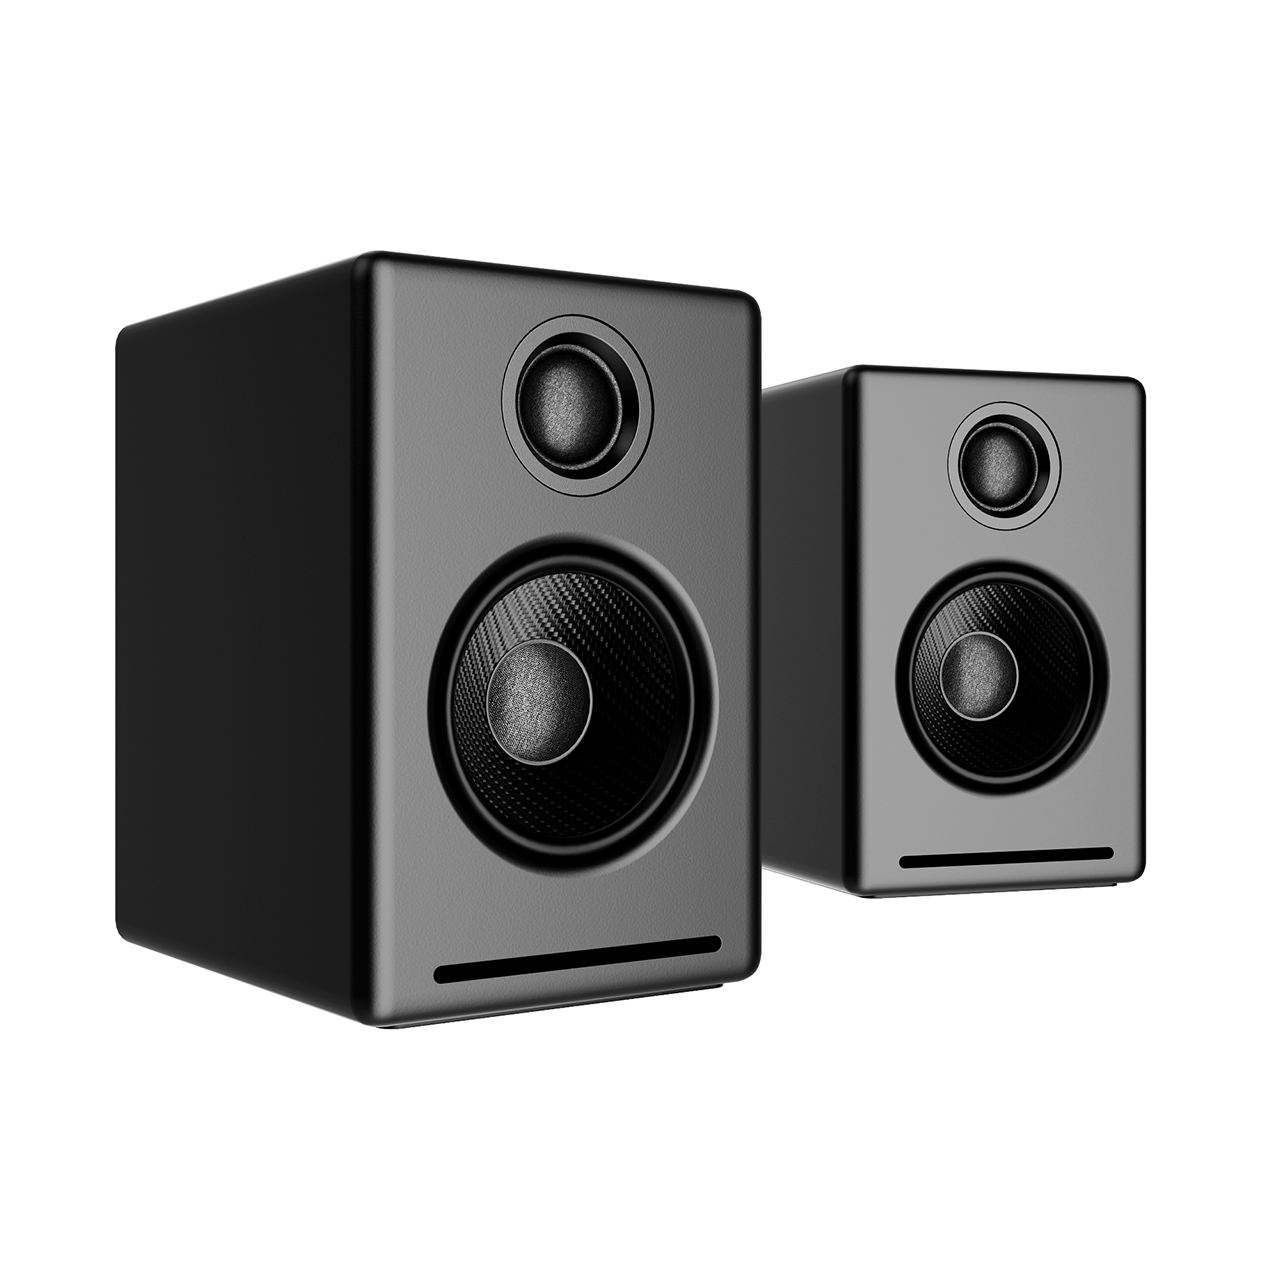 a2-wireless-speaker-system-by-audioengine.jpg